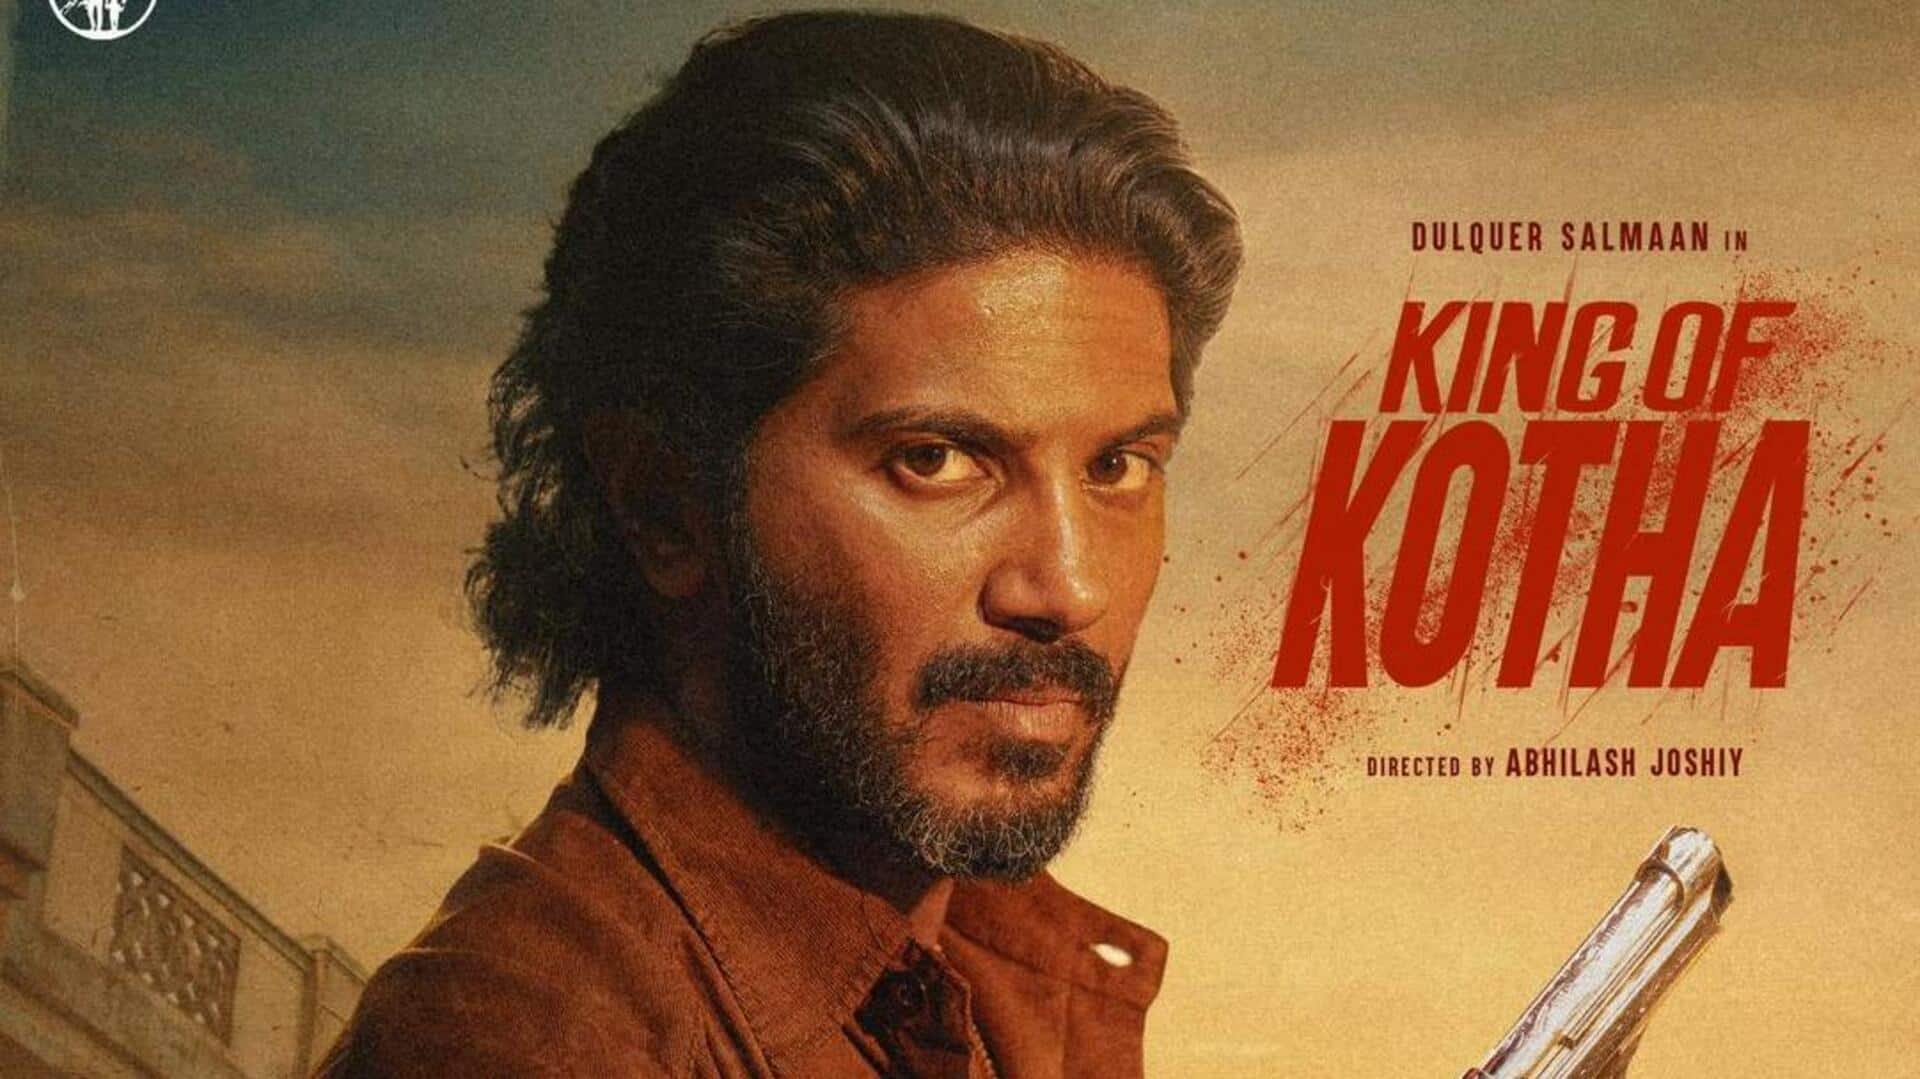 फिल्म 'किंग ऑफ कोठा' का ट्रेलर जारी, एक्शन करते नजर आए दुलकर सलमान 